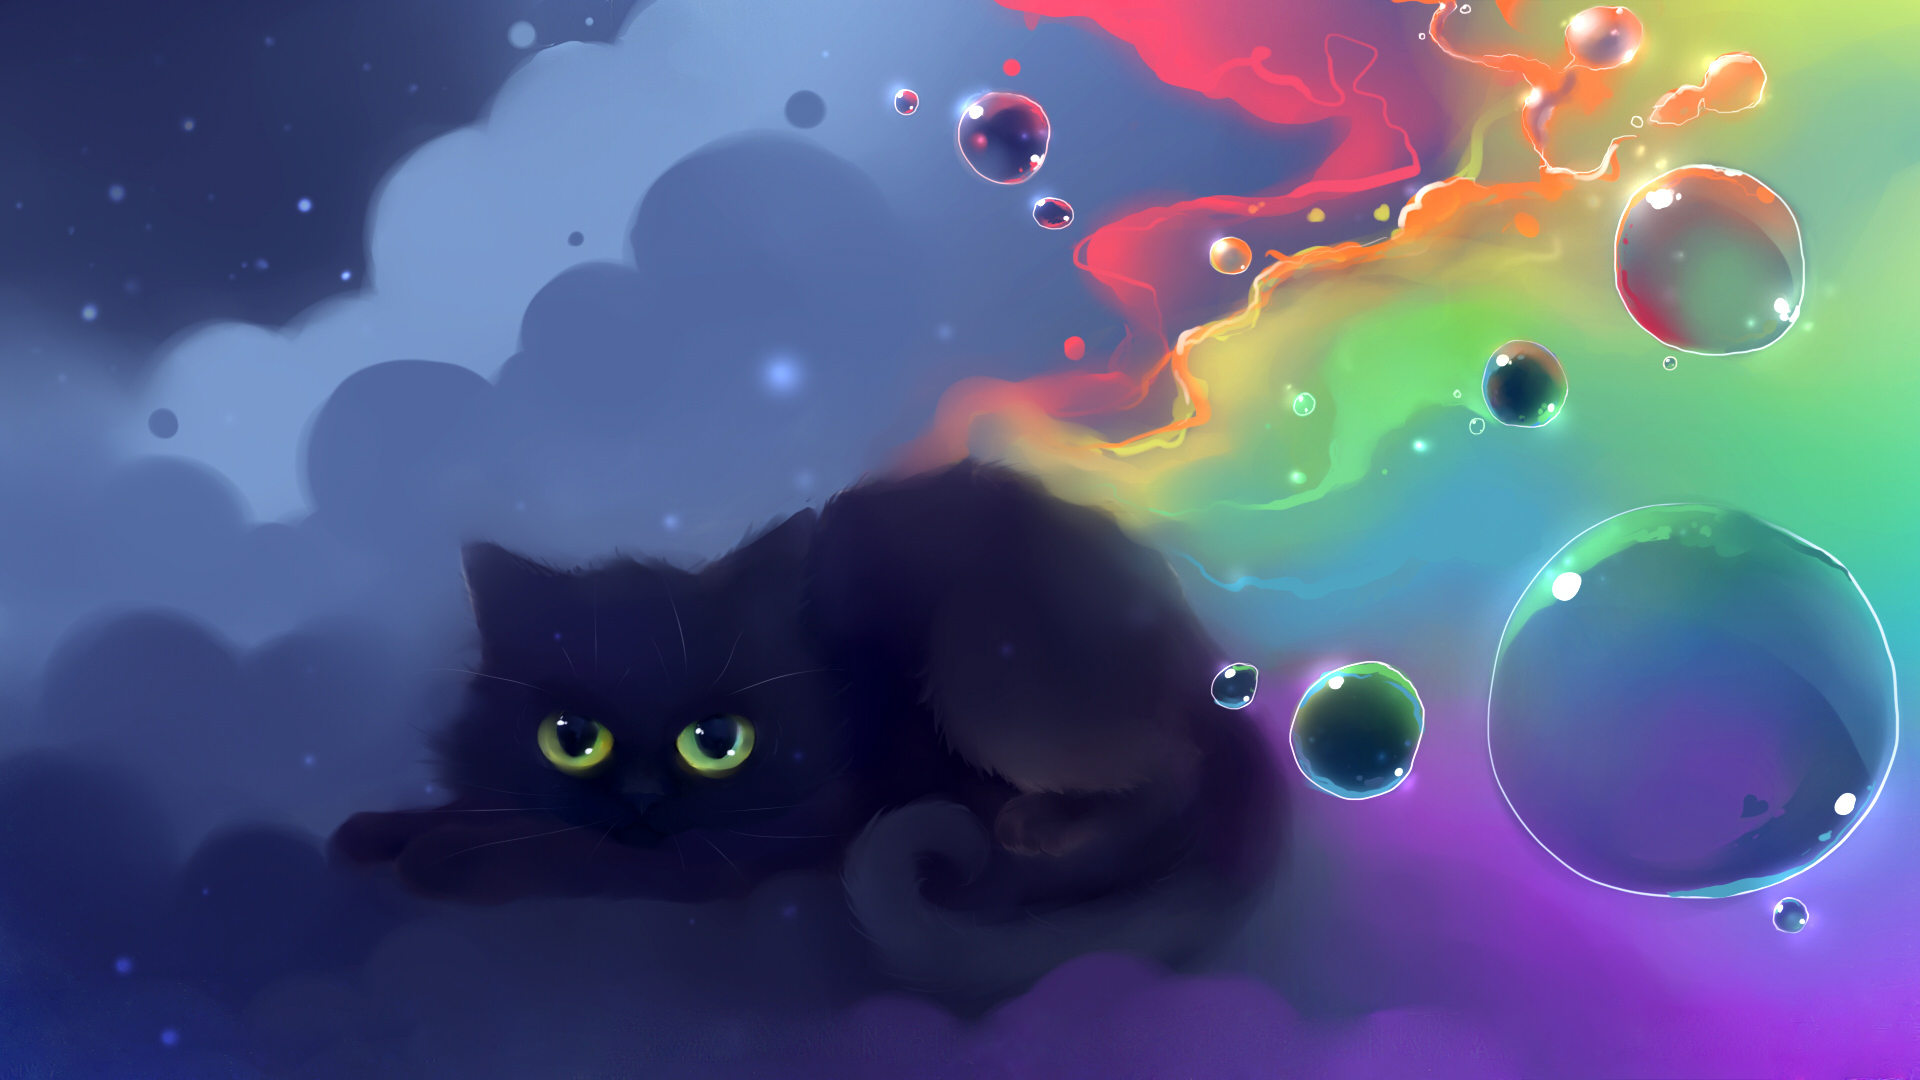 Hình nền Nyan Cat tuyệt đẹp - Bạn muốn tìm kiếm một hình nền tươi sáng, ngộ nghĩnh? Tải ngay những hình Nyan Cat phong cách độc đáo và sắc sảo này để làm mới màn hình điện thoại của bạn ngay hôm nay!